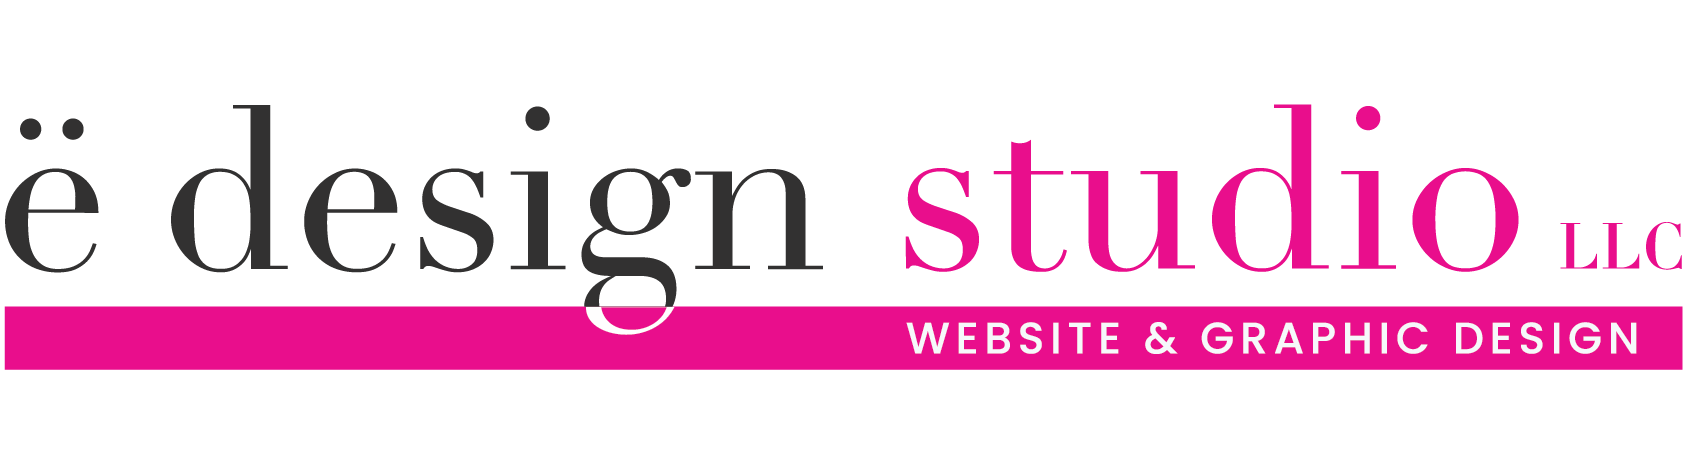 e design studio, LLC - Graphic & Website Design Solutions